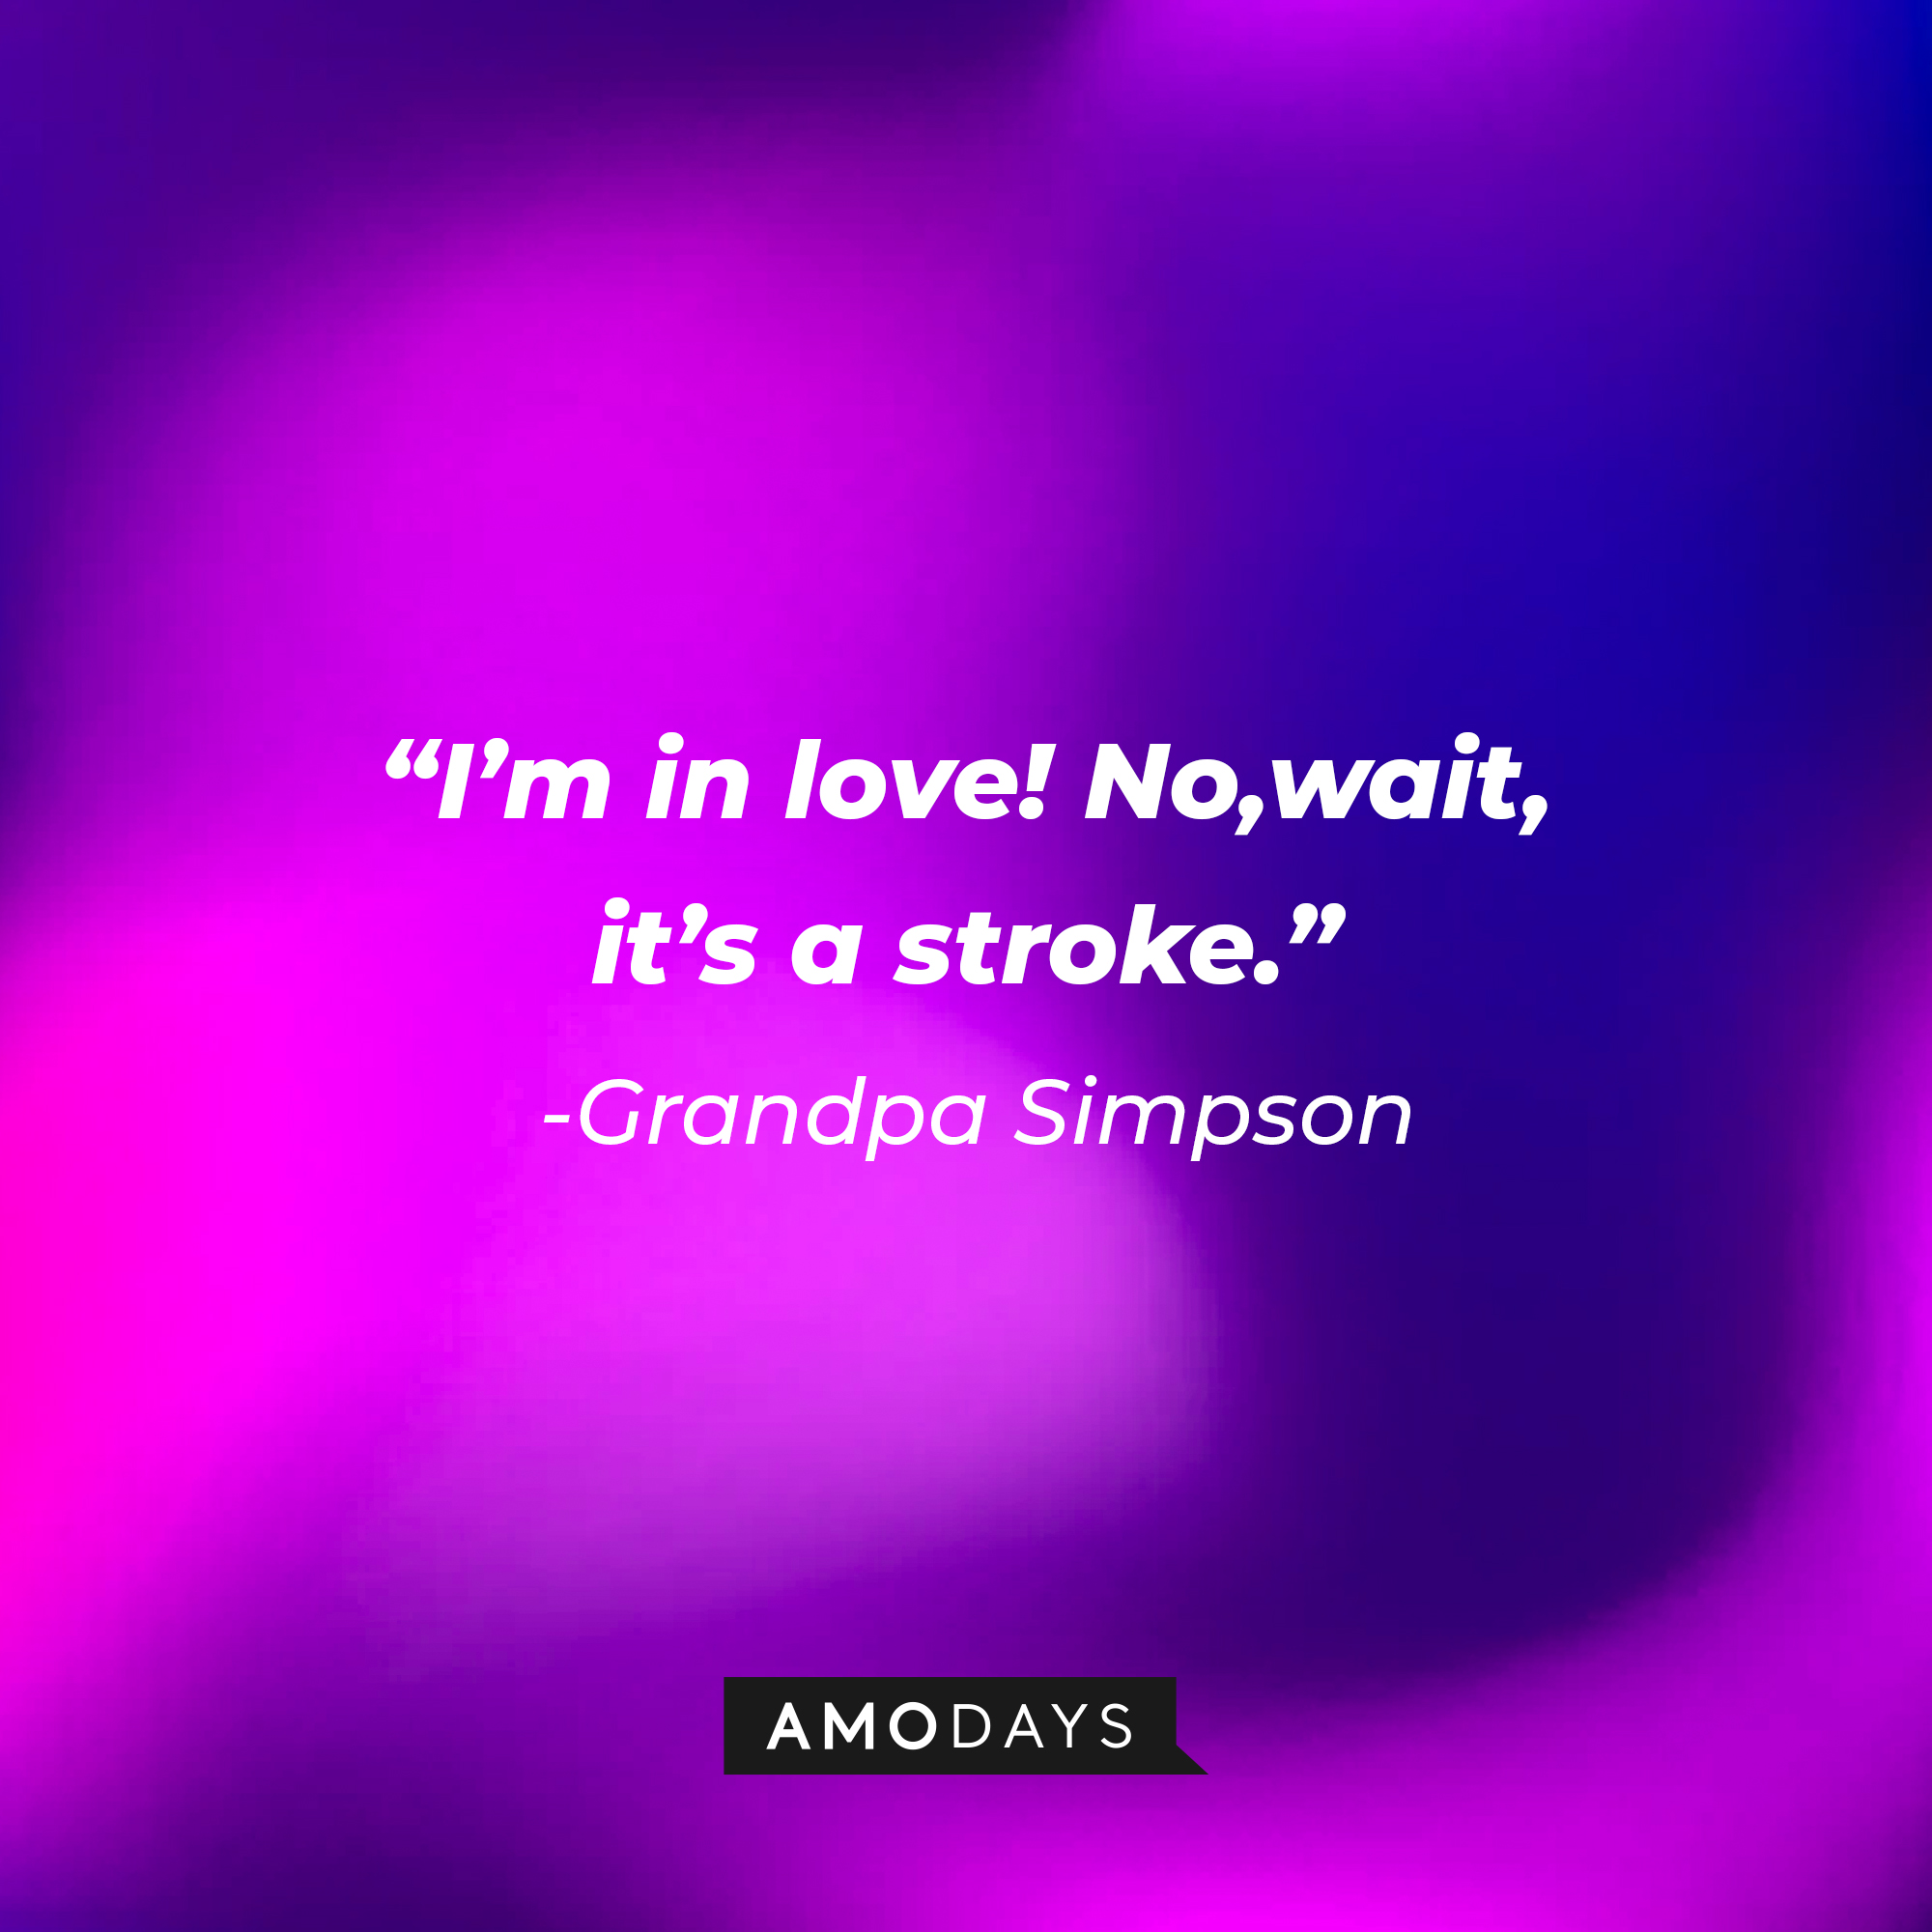 Grandpa Simpson's quote: “I’m in love! No, wait, it’s a stroke.” | Source: AmoDays